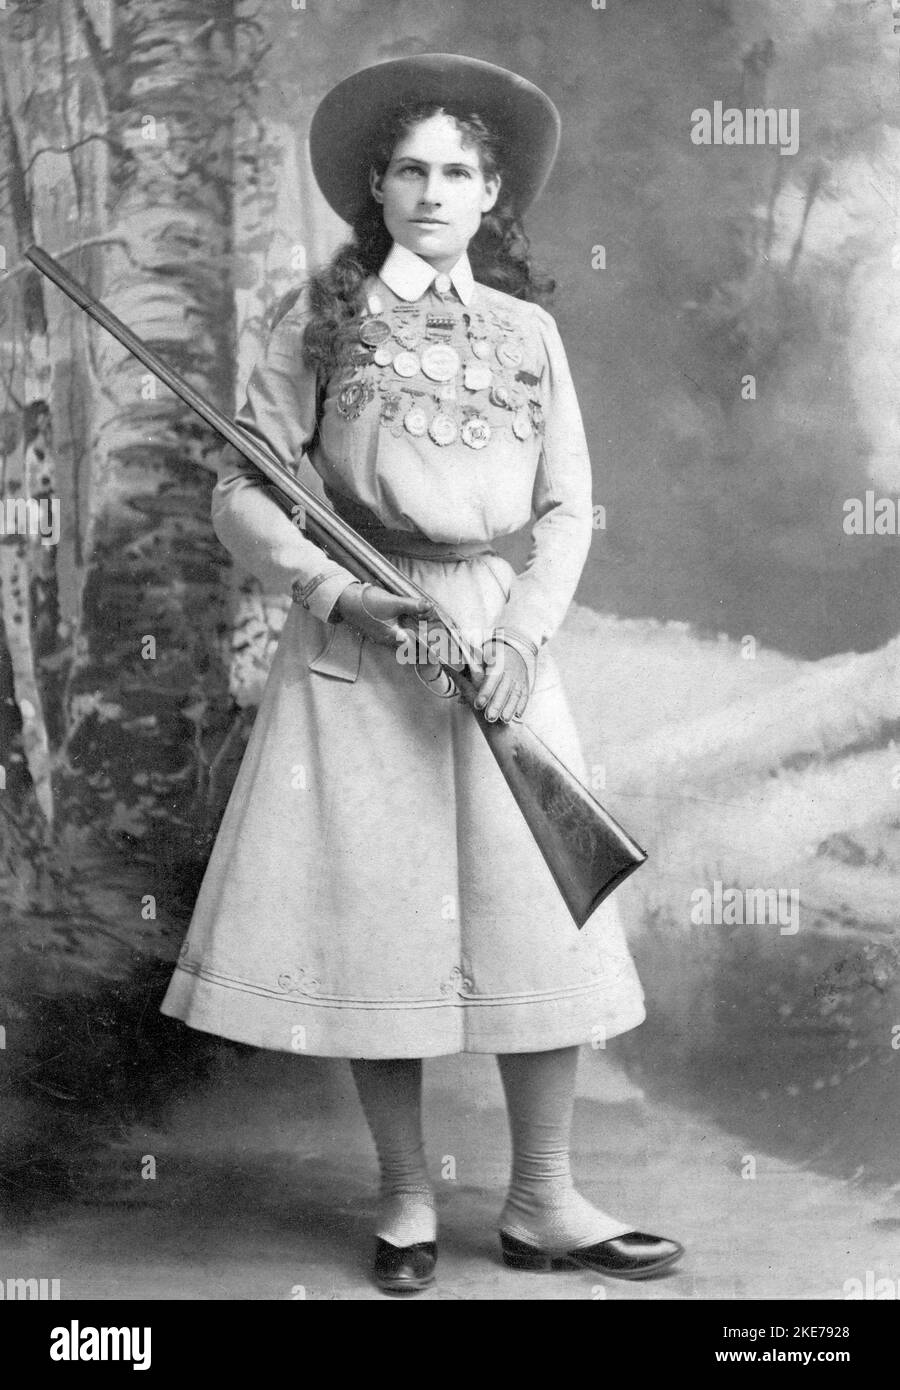 Annie Oakley (Phoebe Ann Mosey, 1860 – 1926) le sharpshooter américain qui a joué dans le spectacle Wild West de Buffalo Bill. Banque D'Images